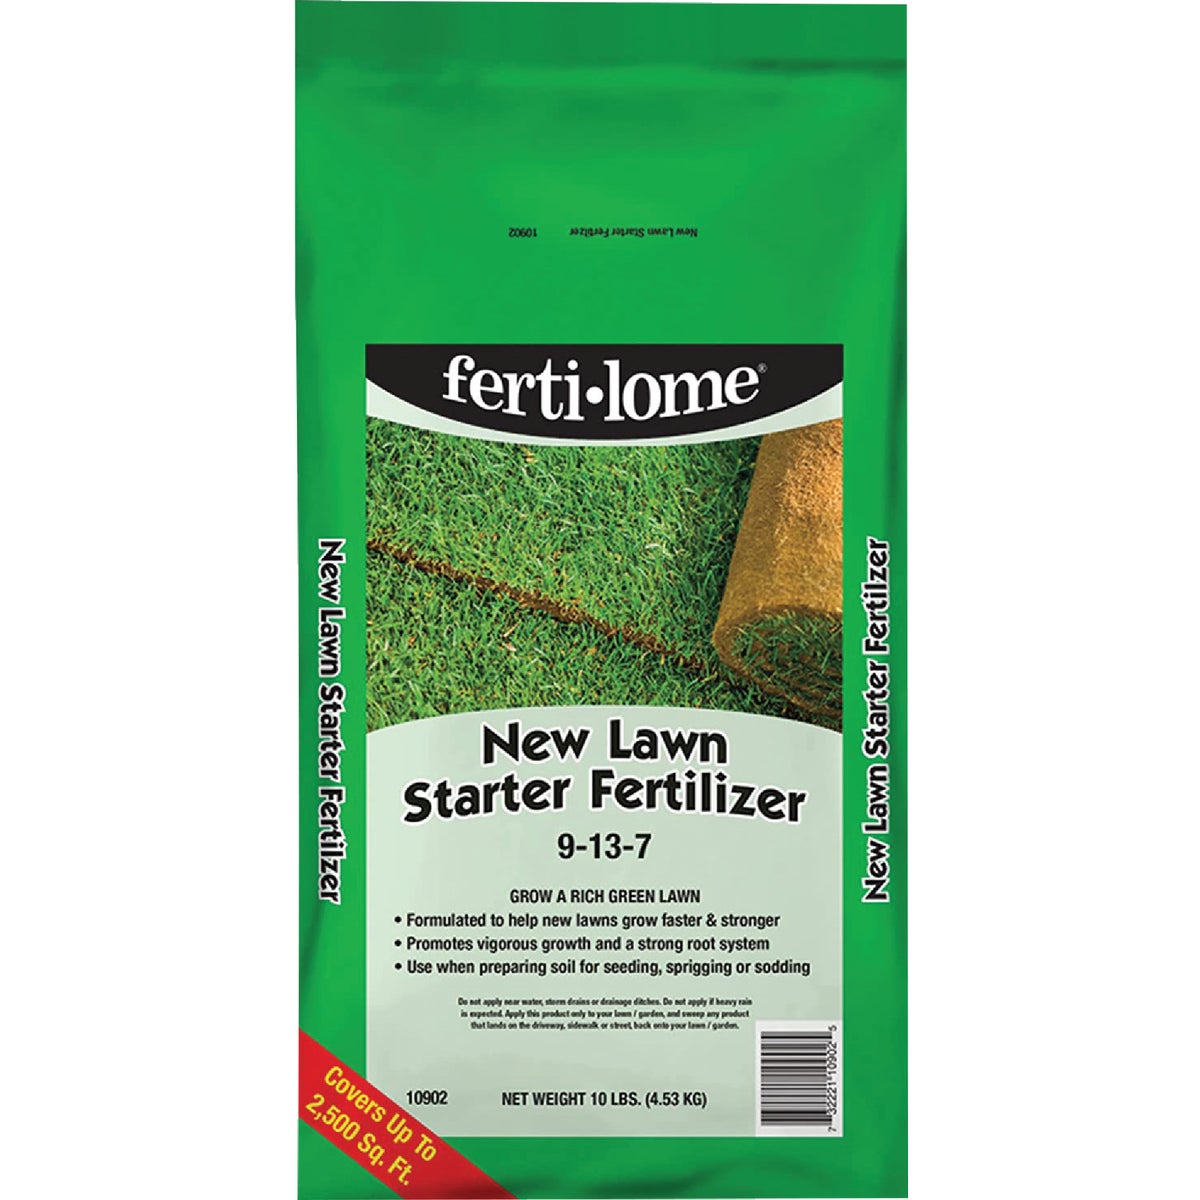 Ferti-lome 10 Lb. 2500 Sq. Ft. 9-13-7 New Lawn Starter Fertilizer